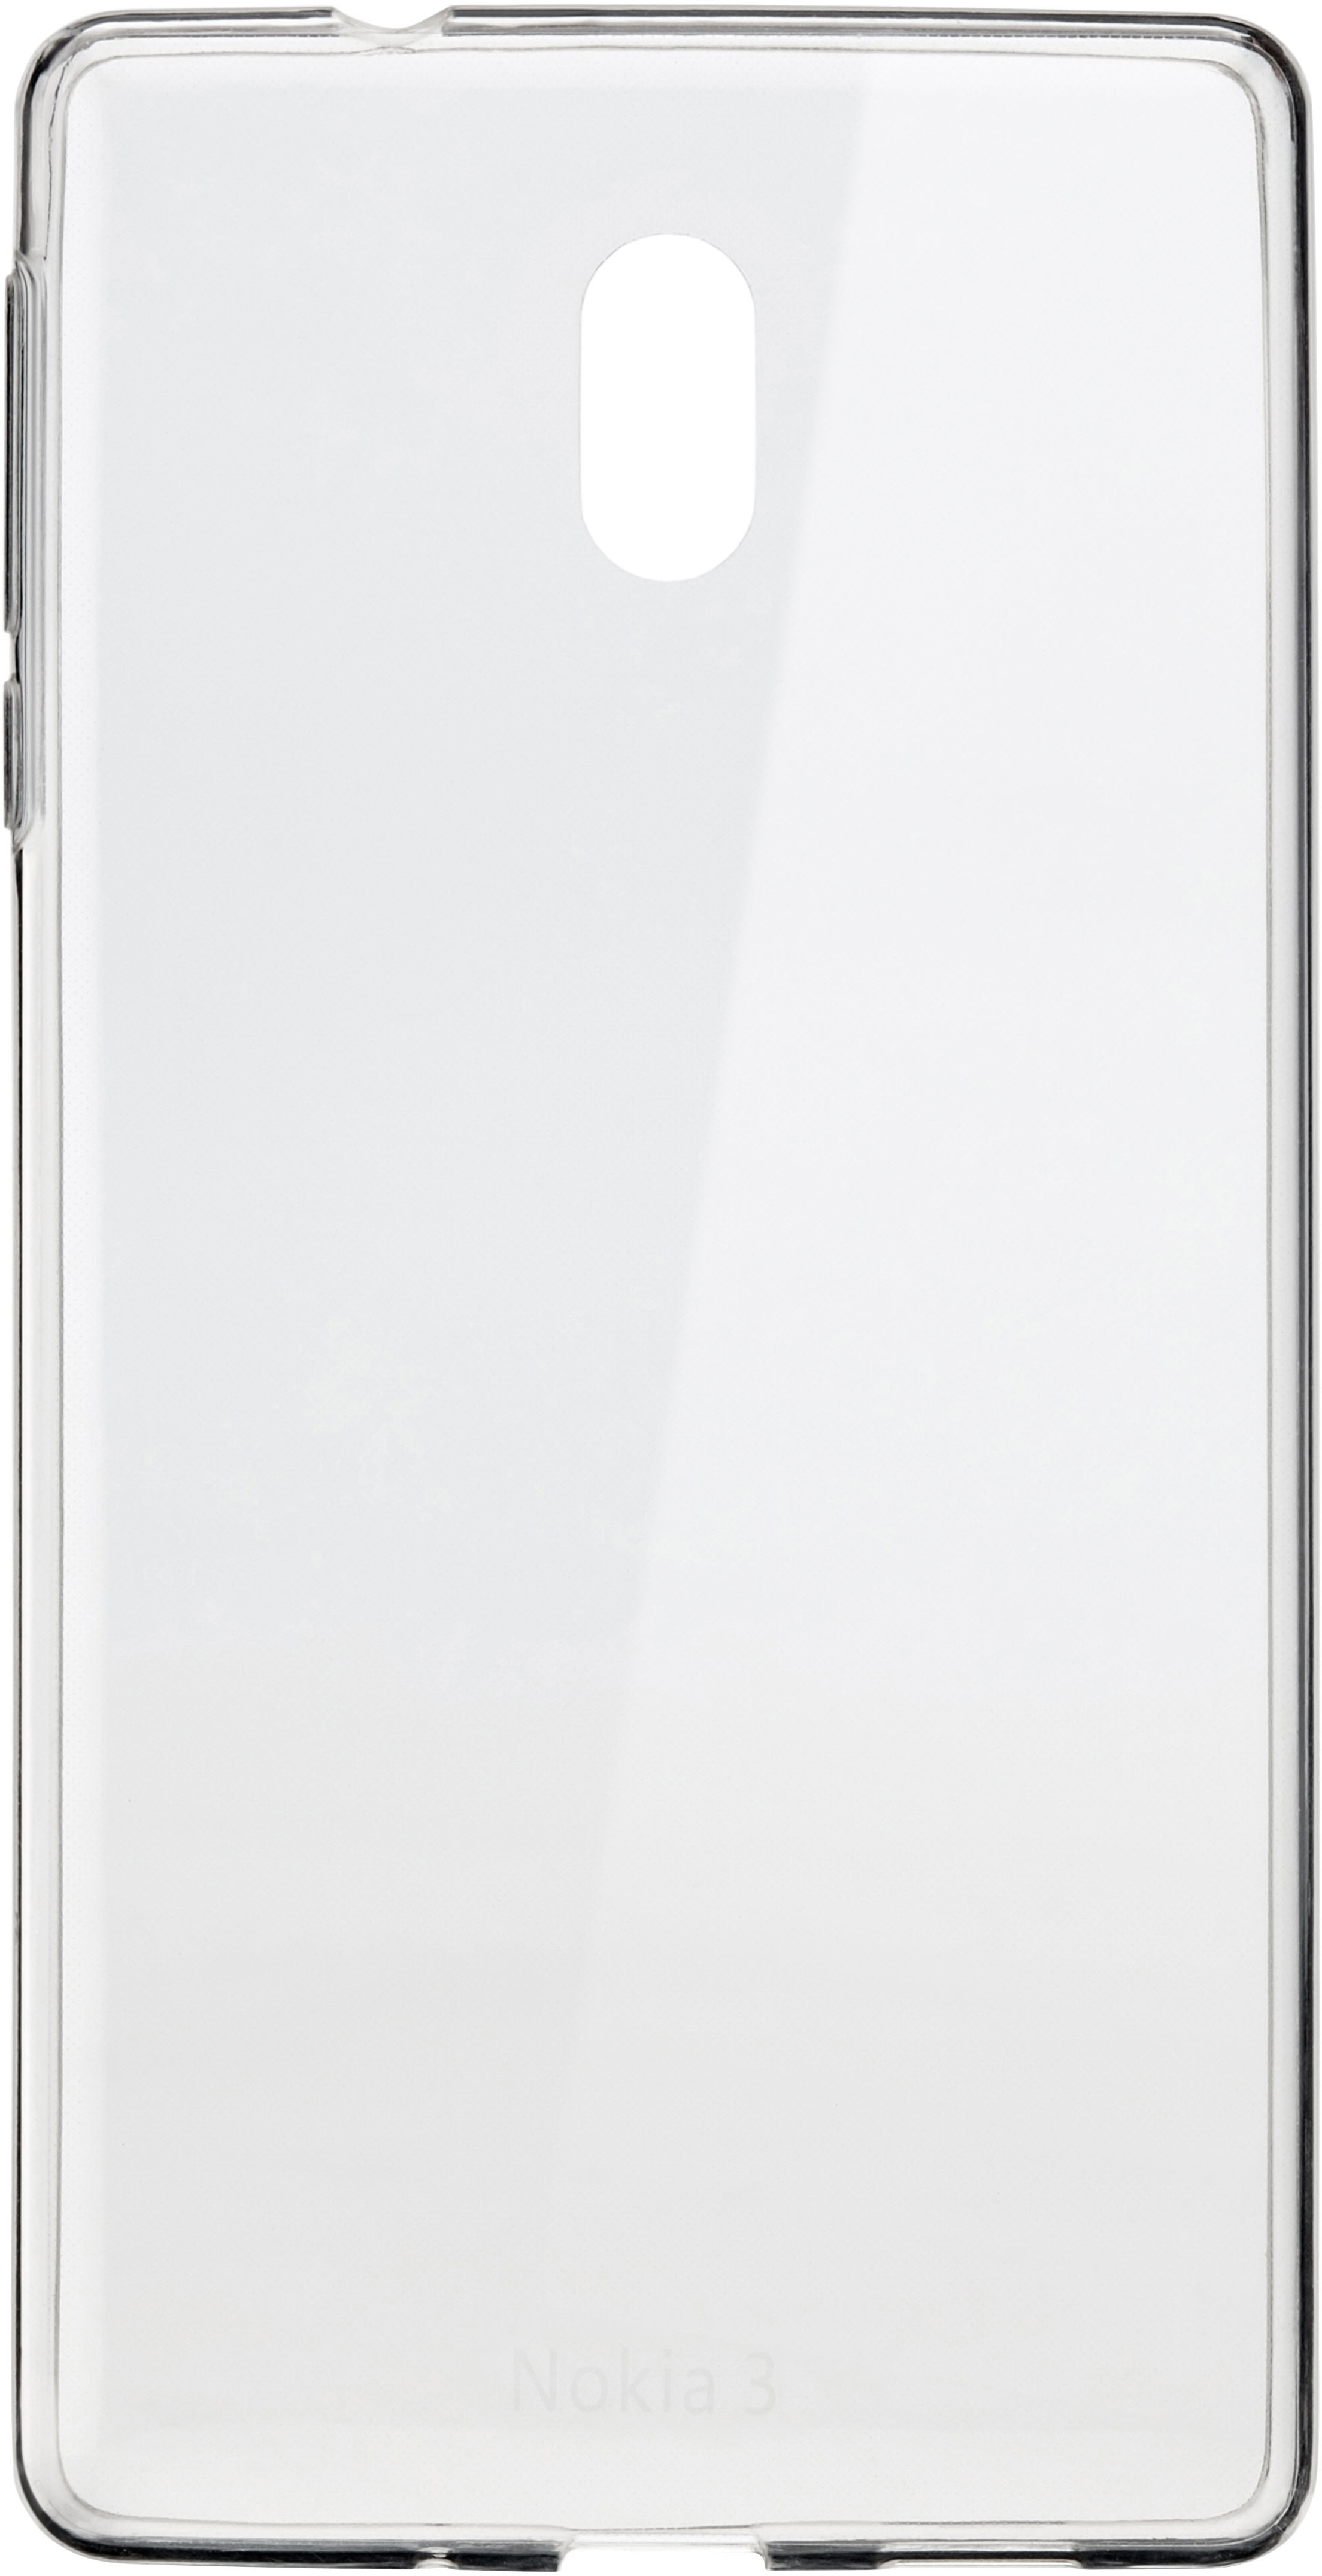 CC-103, Nokia, 3, Transparent Backcover, NOKIA Crystal Cover Slim